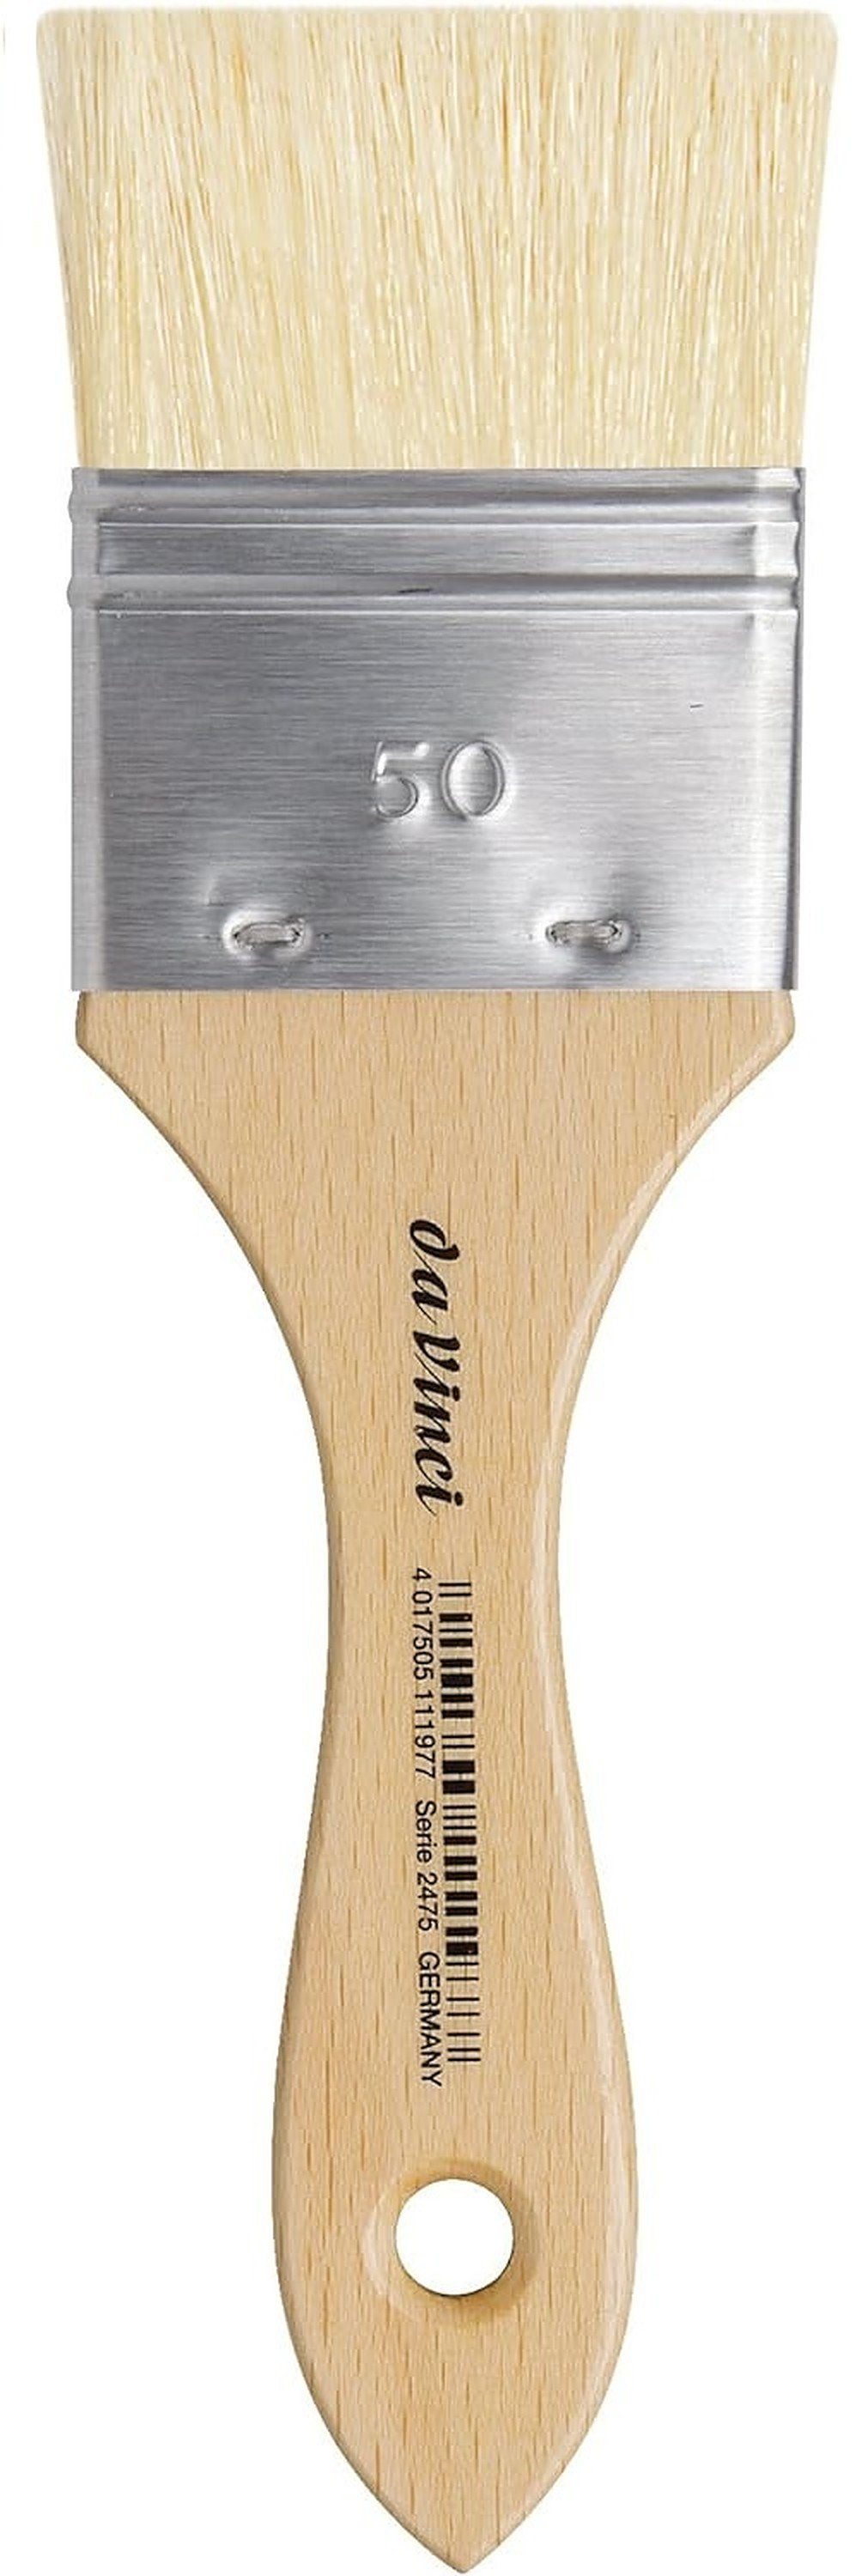 Da Vinci Pinsel Borstenpinsel, Lack- (1 Vinci Gr. Melierpinsel, Borsten Schweineborsten Holzstiel, Stück), 80, & Grundierungspinsel da